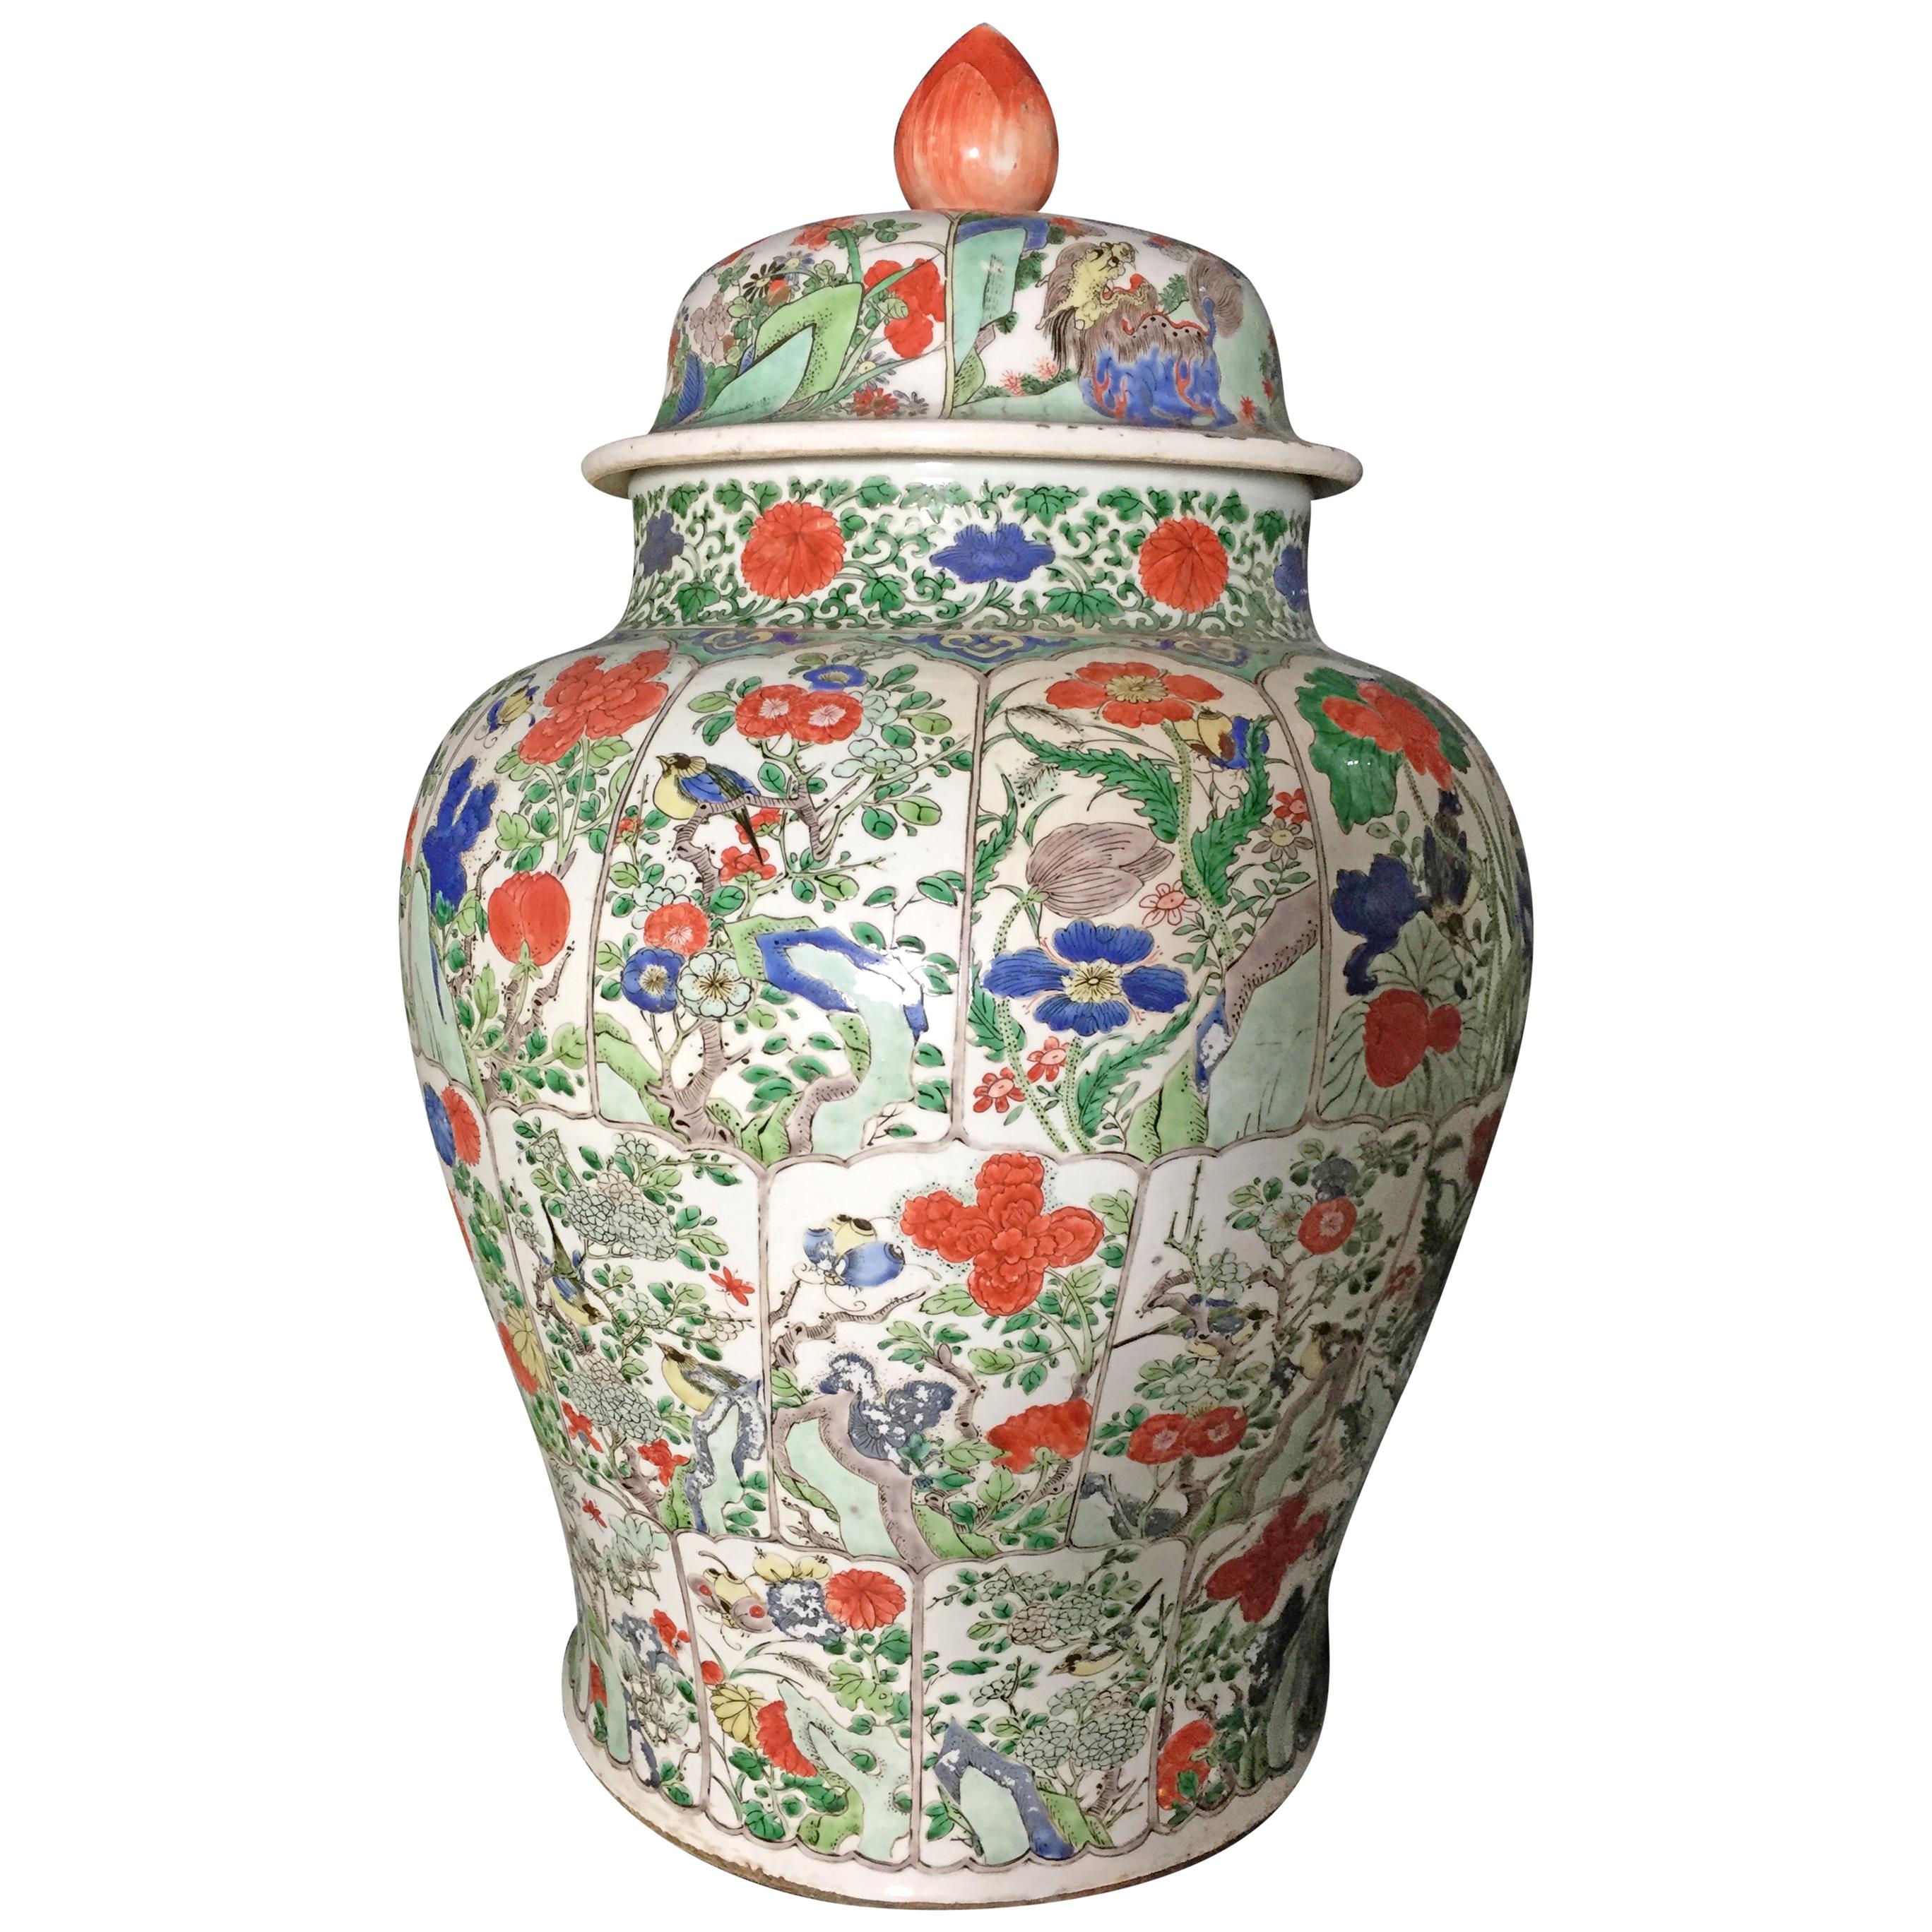 Kangxi Period Lidded Vase